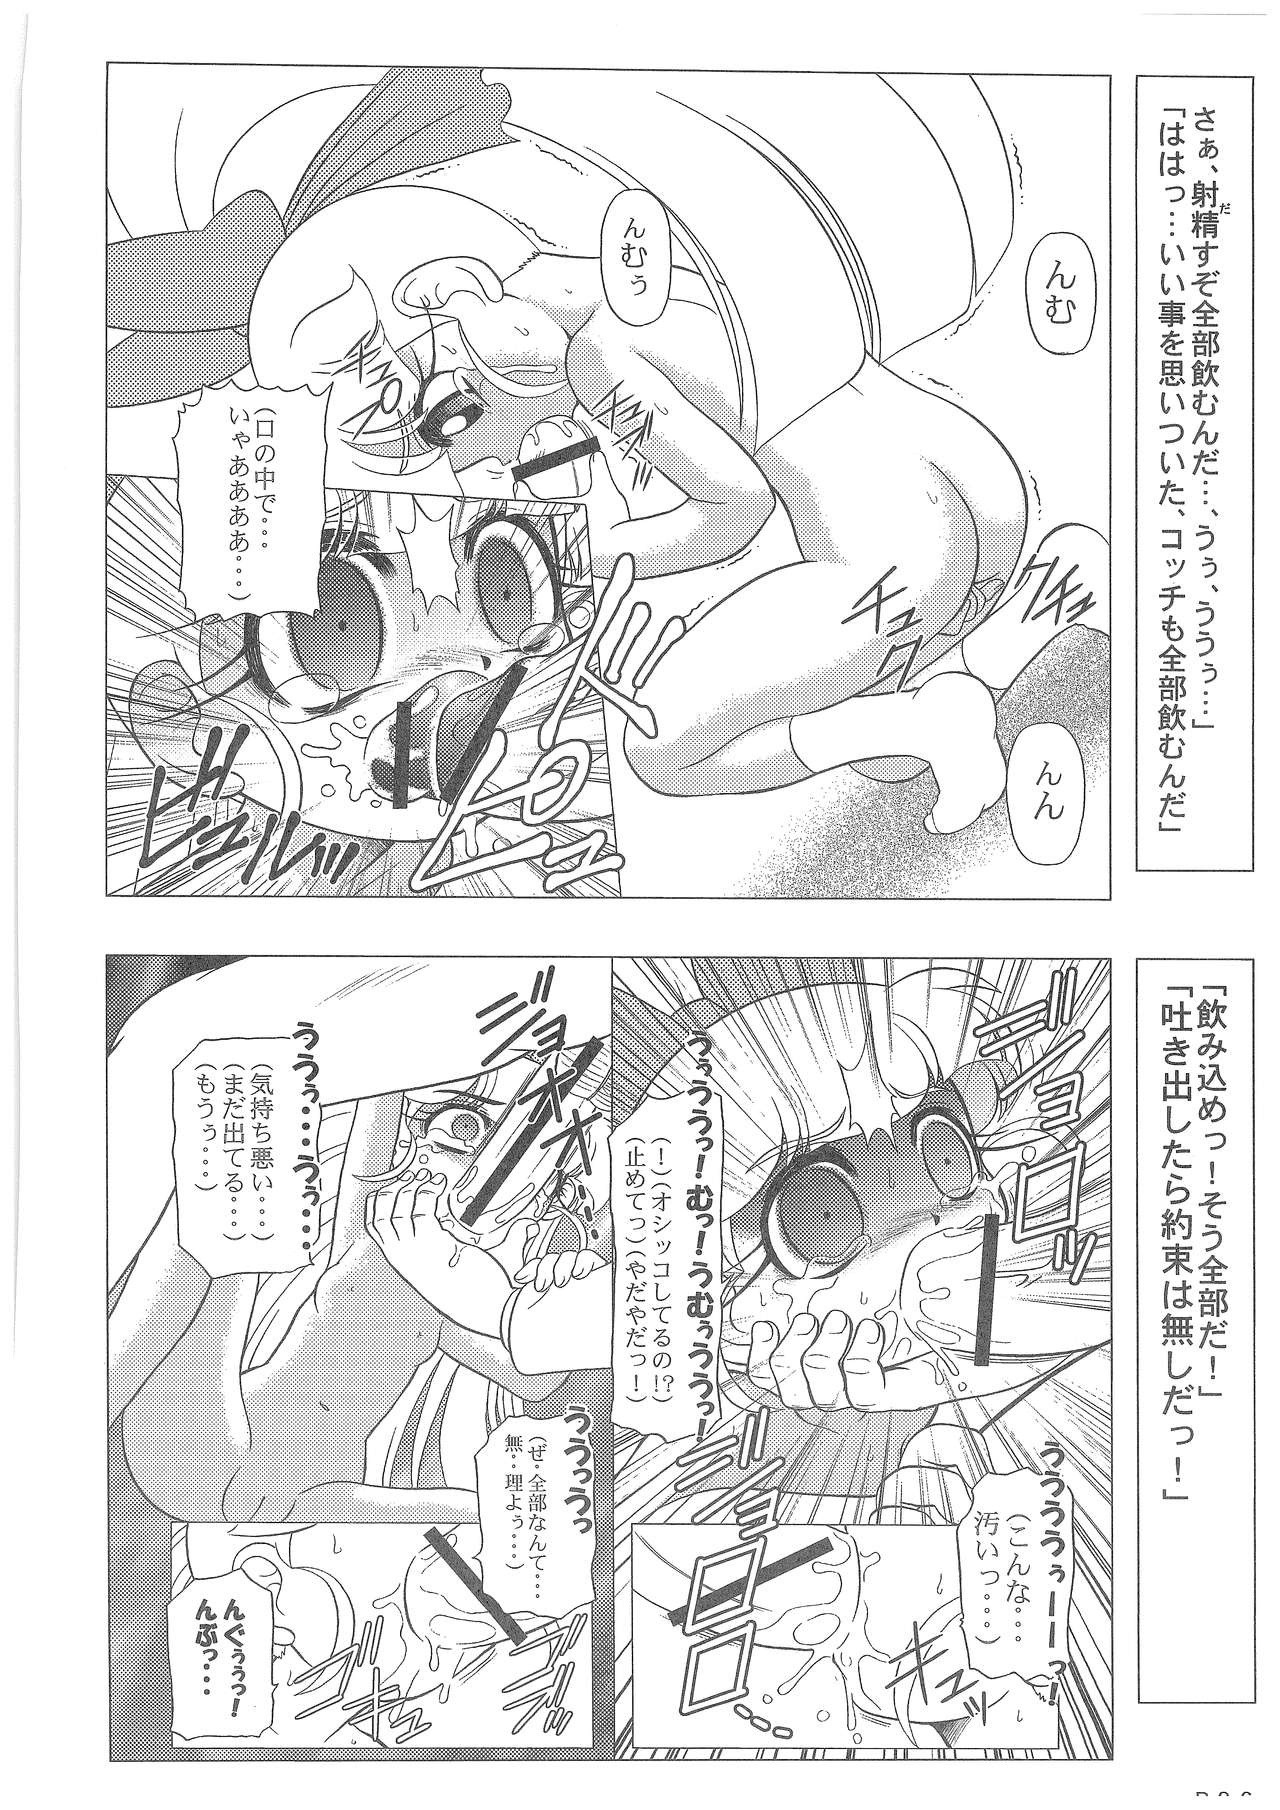 Power Puff Girls Z 001 hentai manga picture 24